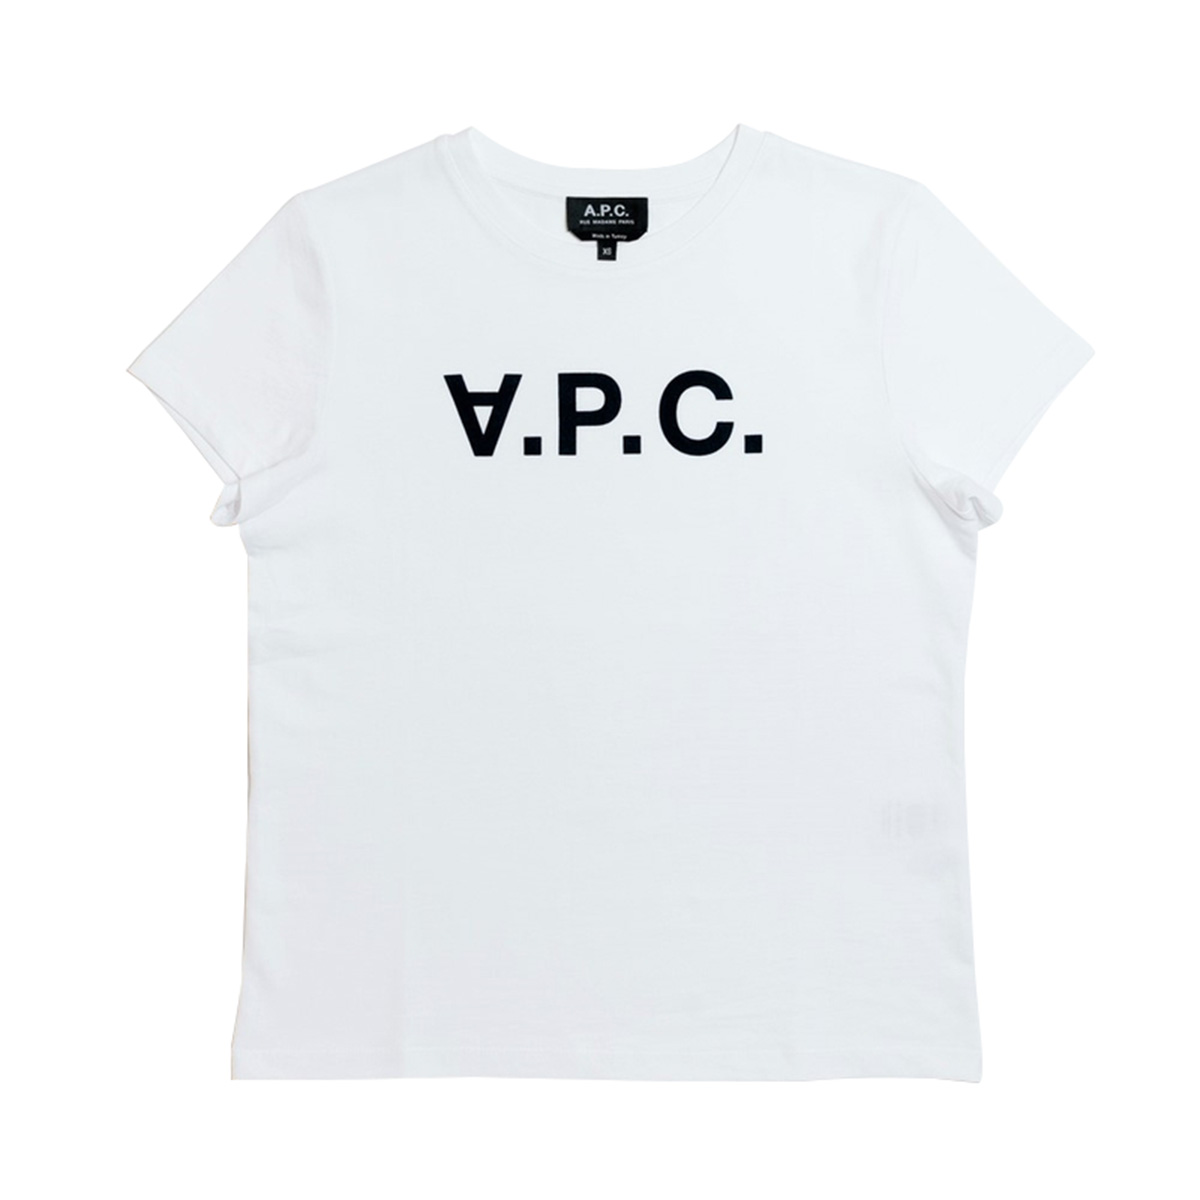 アーペーセー A.P.C. レディース ウイメンズ 半袖 Tシャツ F26588 COBQX IAK VPC BLANC W'S T-SHIRT DARK NAVY ホワイト XS S M Lブラン